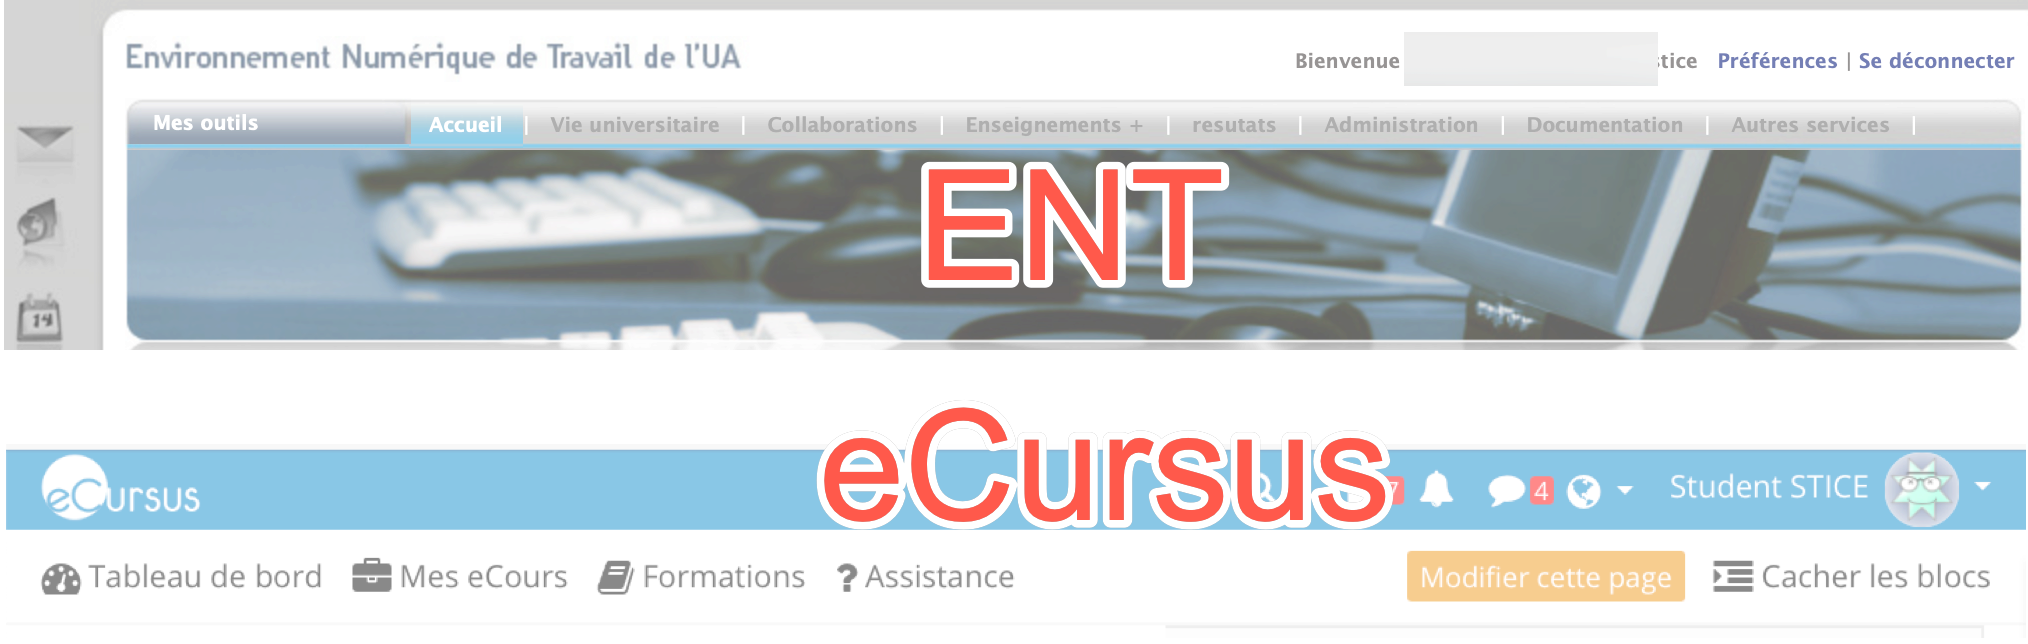 eCursus ENT